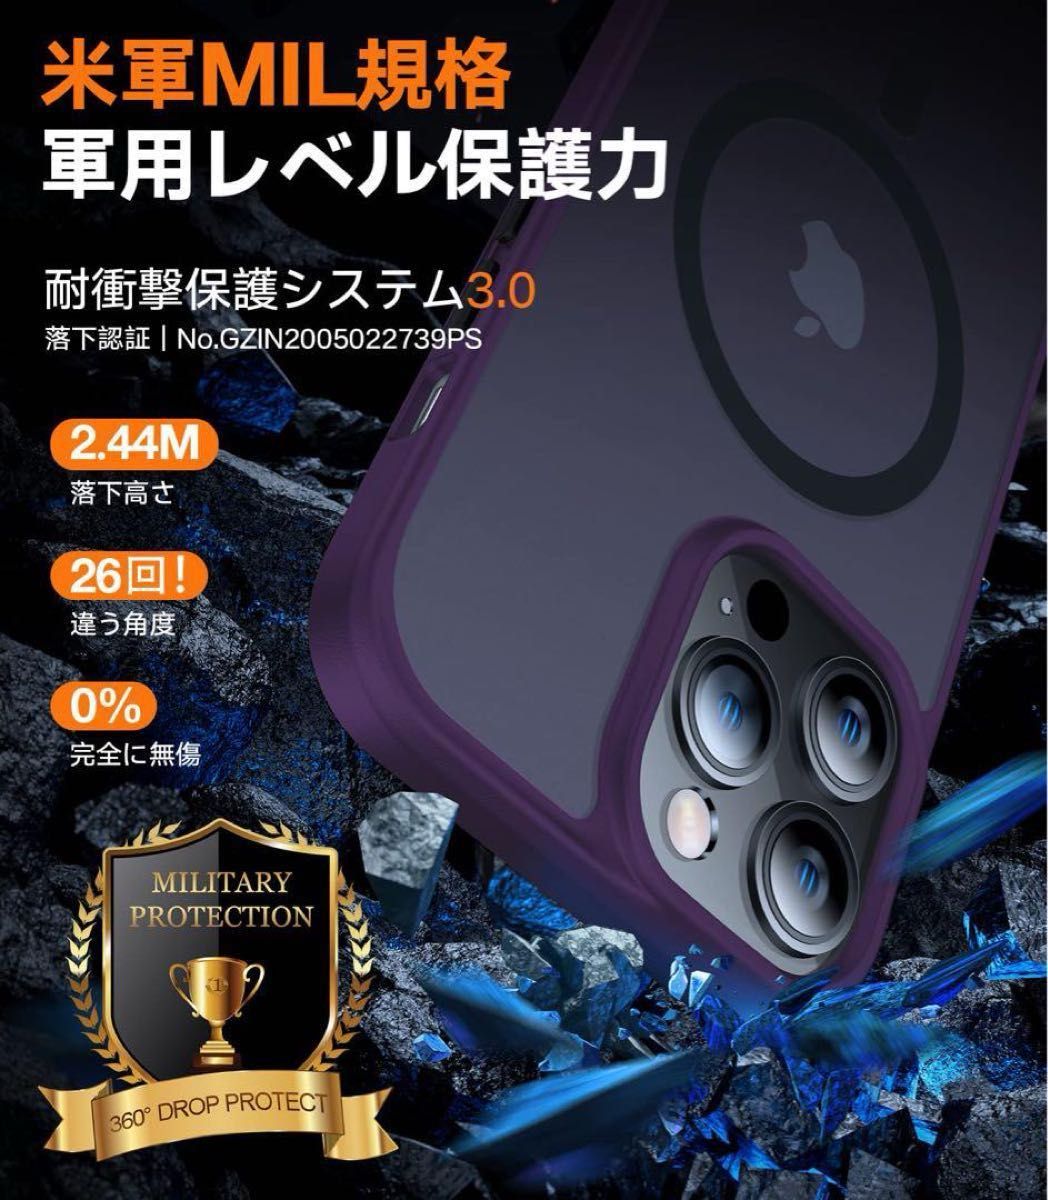 ★訳あり★TORRAS iPhone 14 Pro 用 ケース 半透明